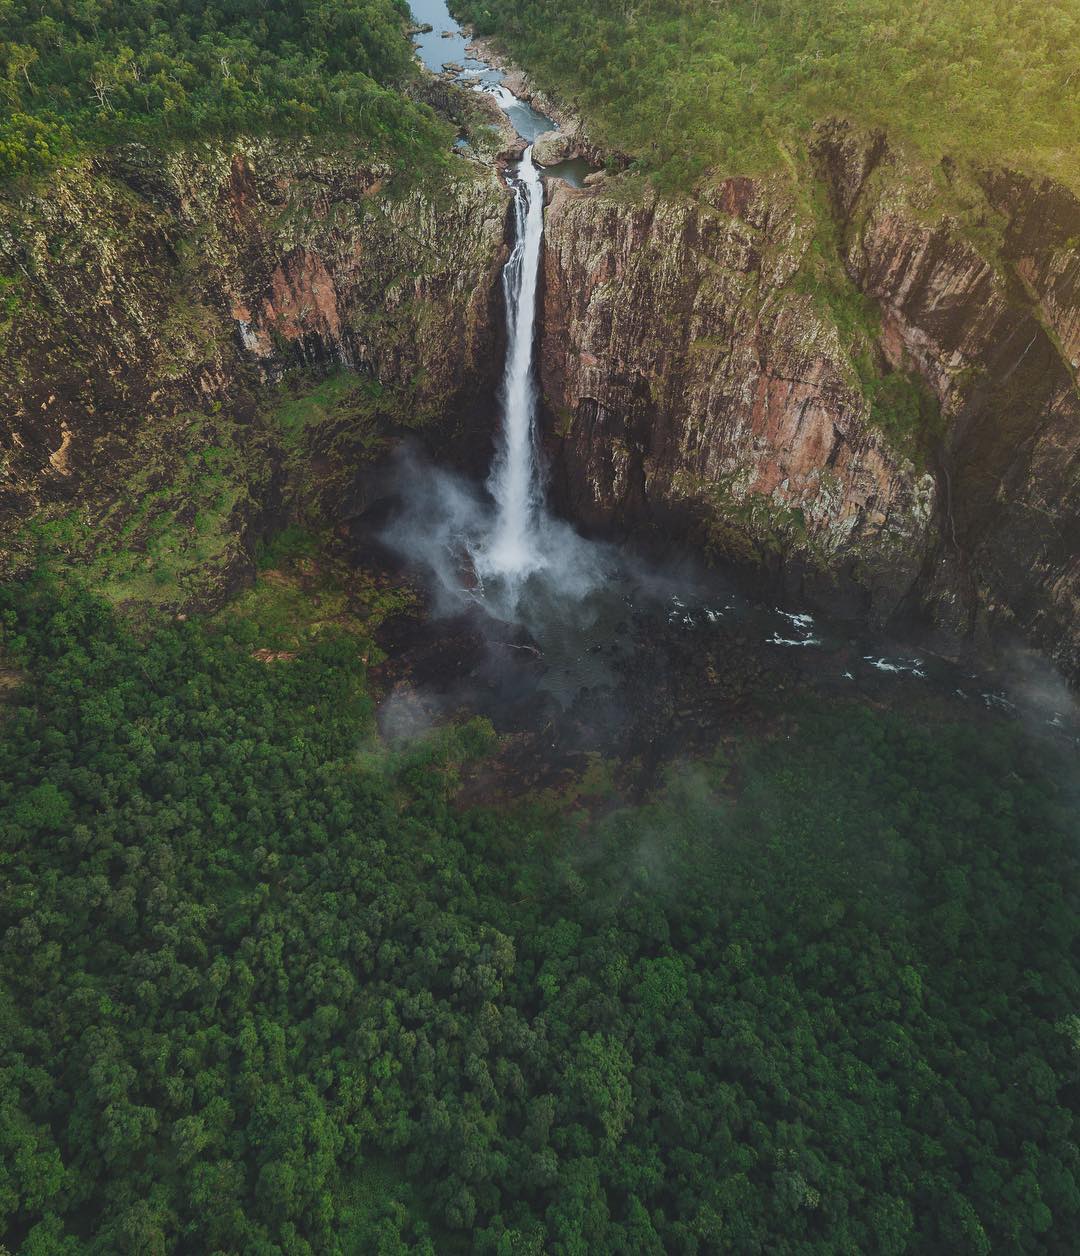 Wallaman Falls, Queensland